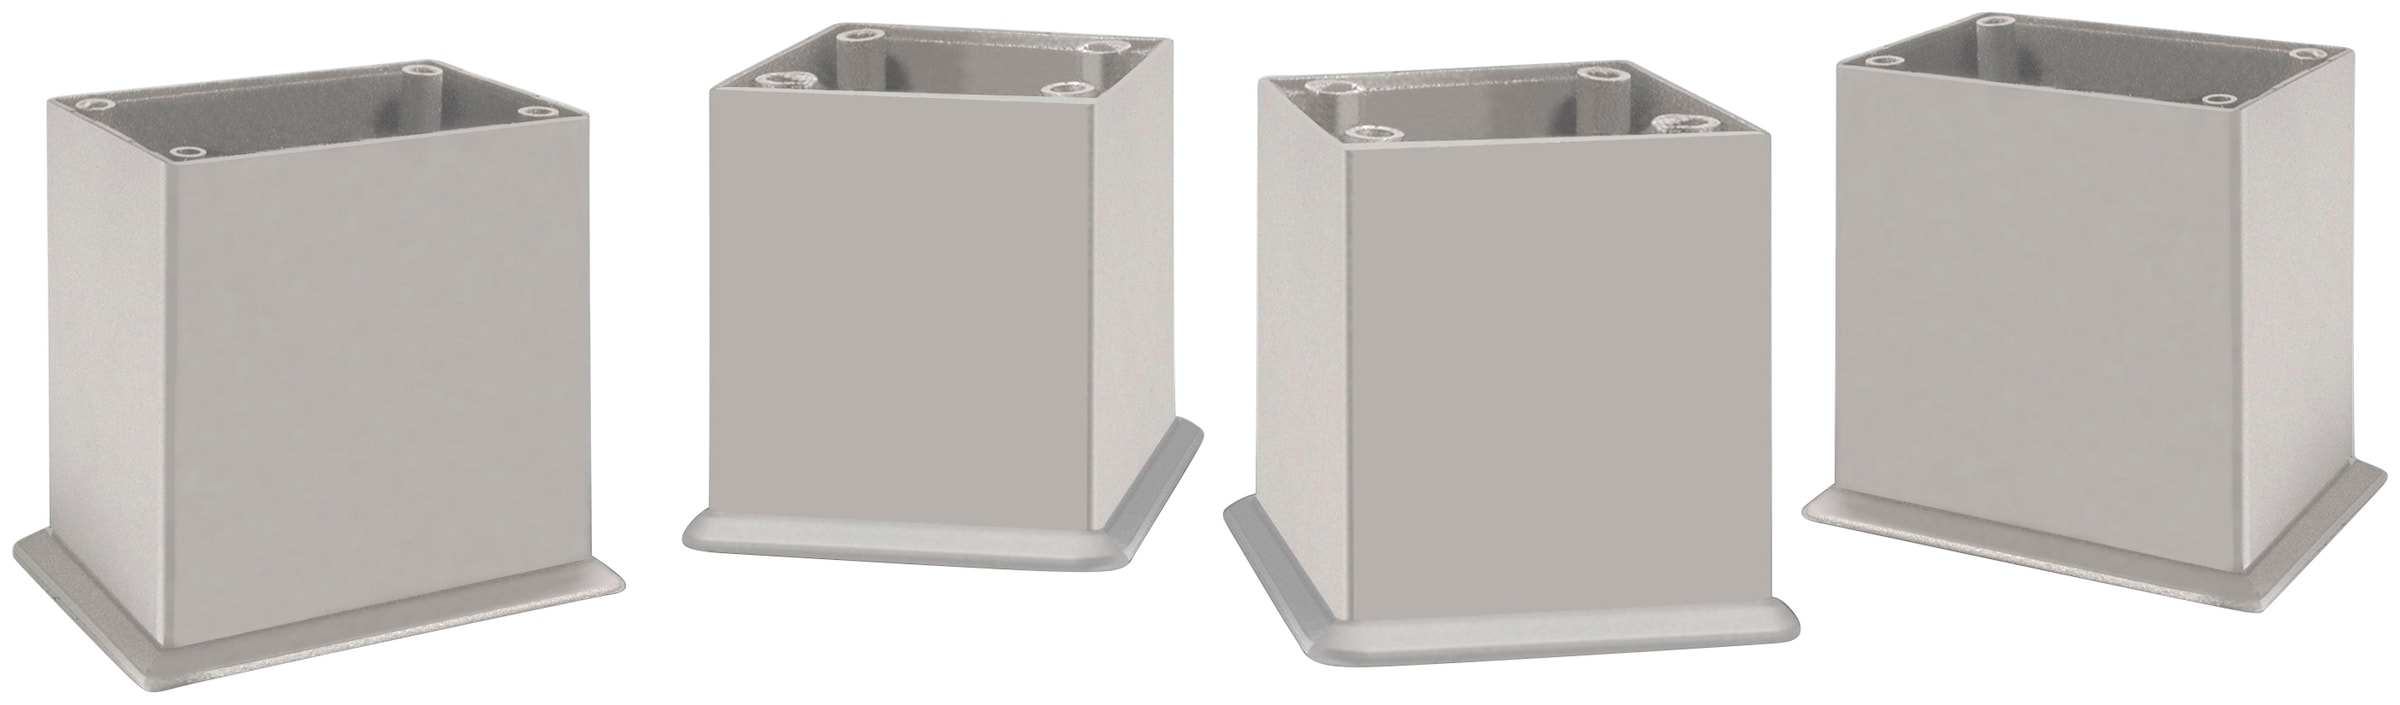 HELD MÖBEL Waschbeckenunterschrank »Bauska«, 70 cm breit, mit 2 Auszügen